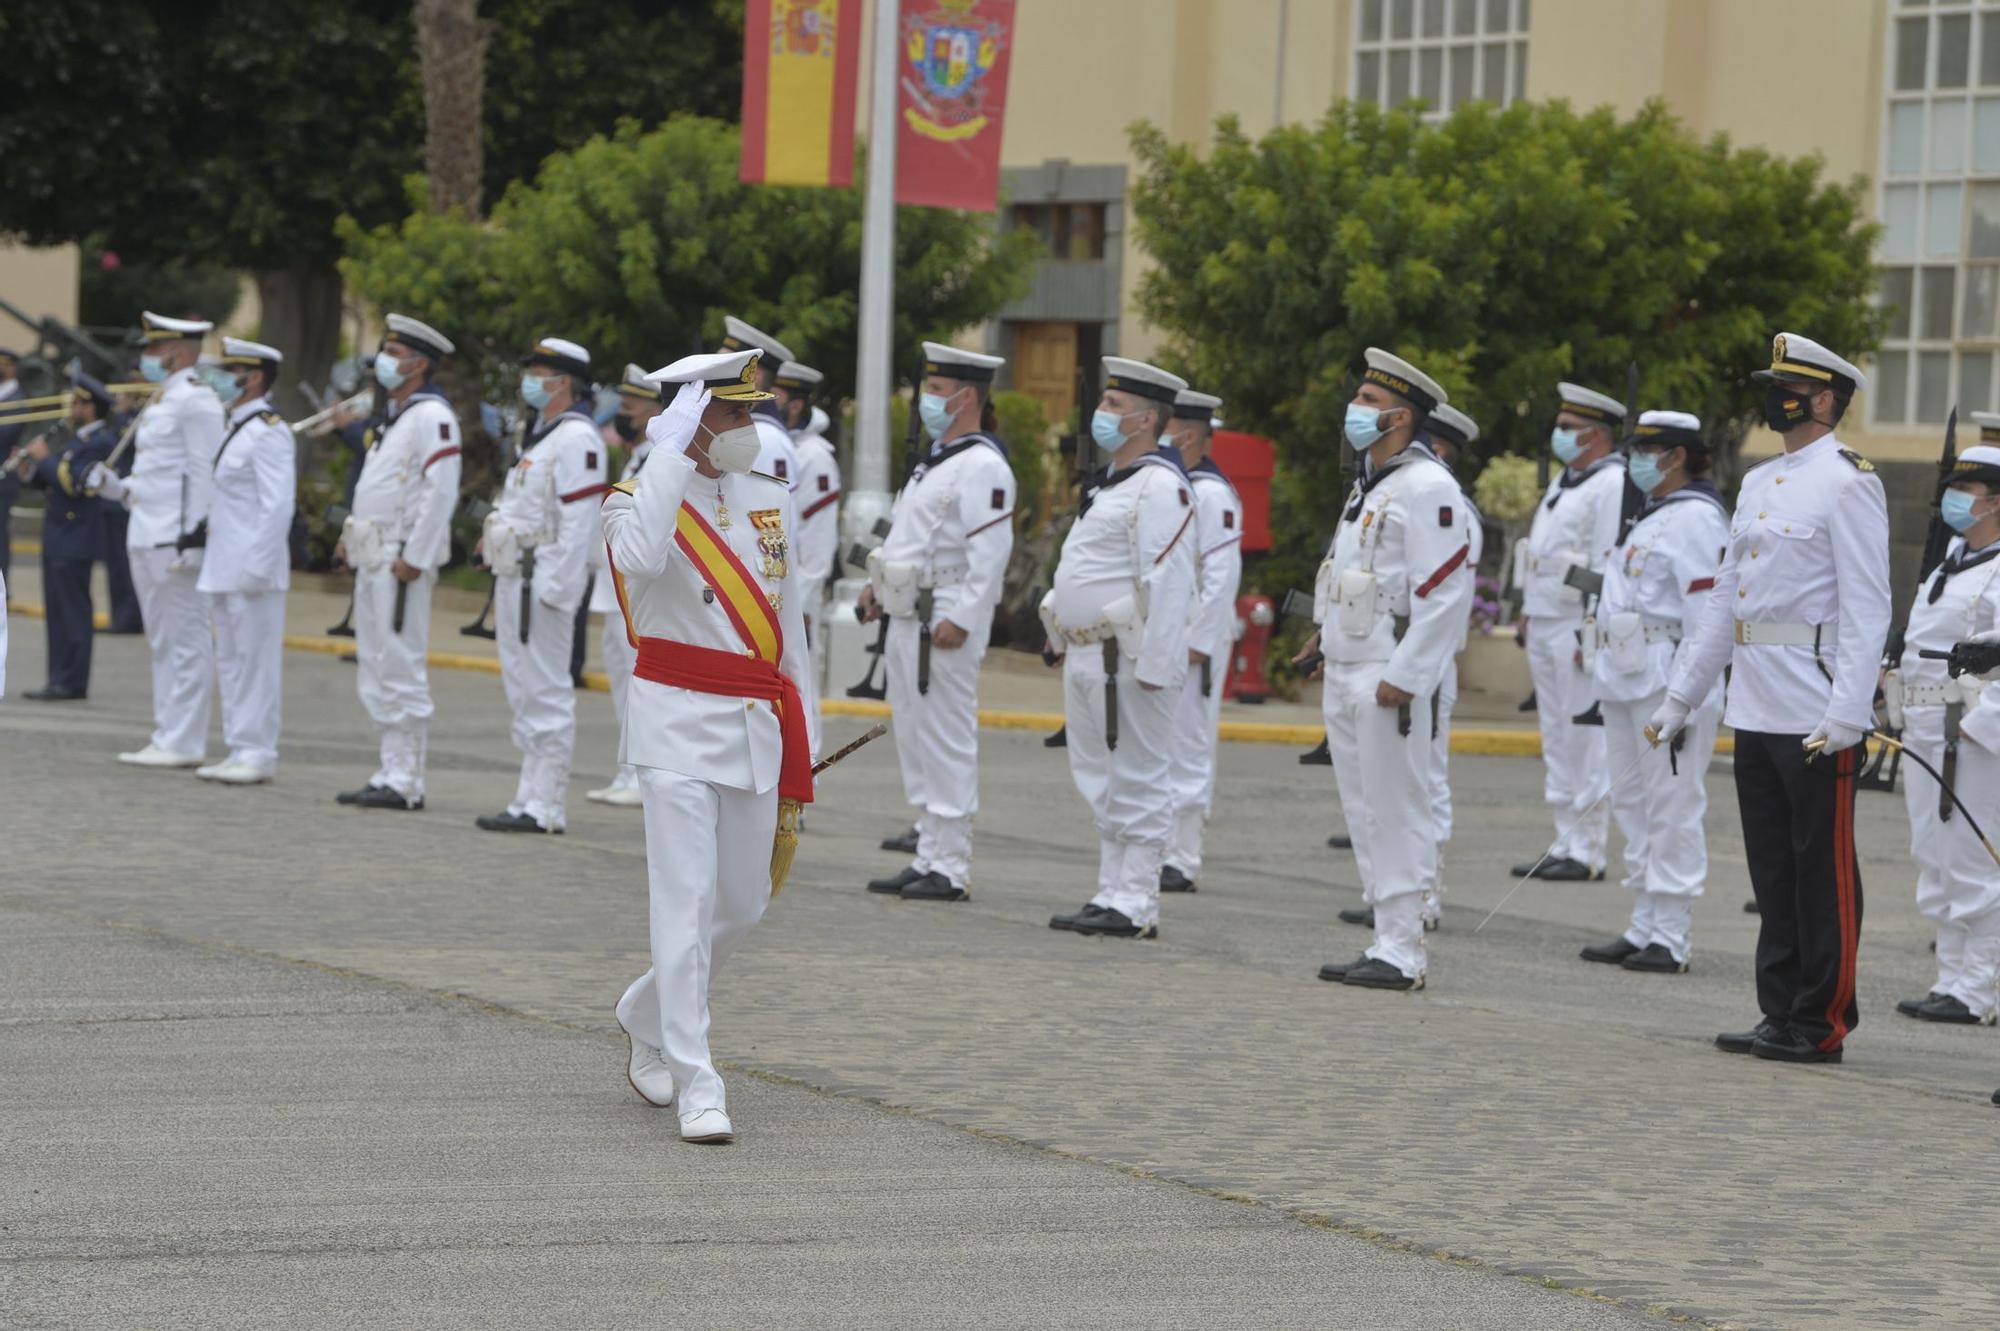 La Armada celebra la festividad del Carmen en Las Palmas de Gran Canaria (16/07/2021)